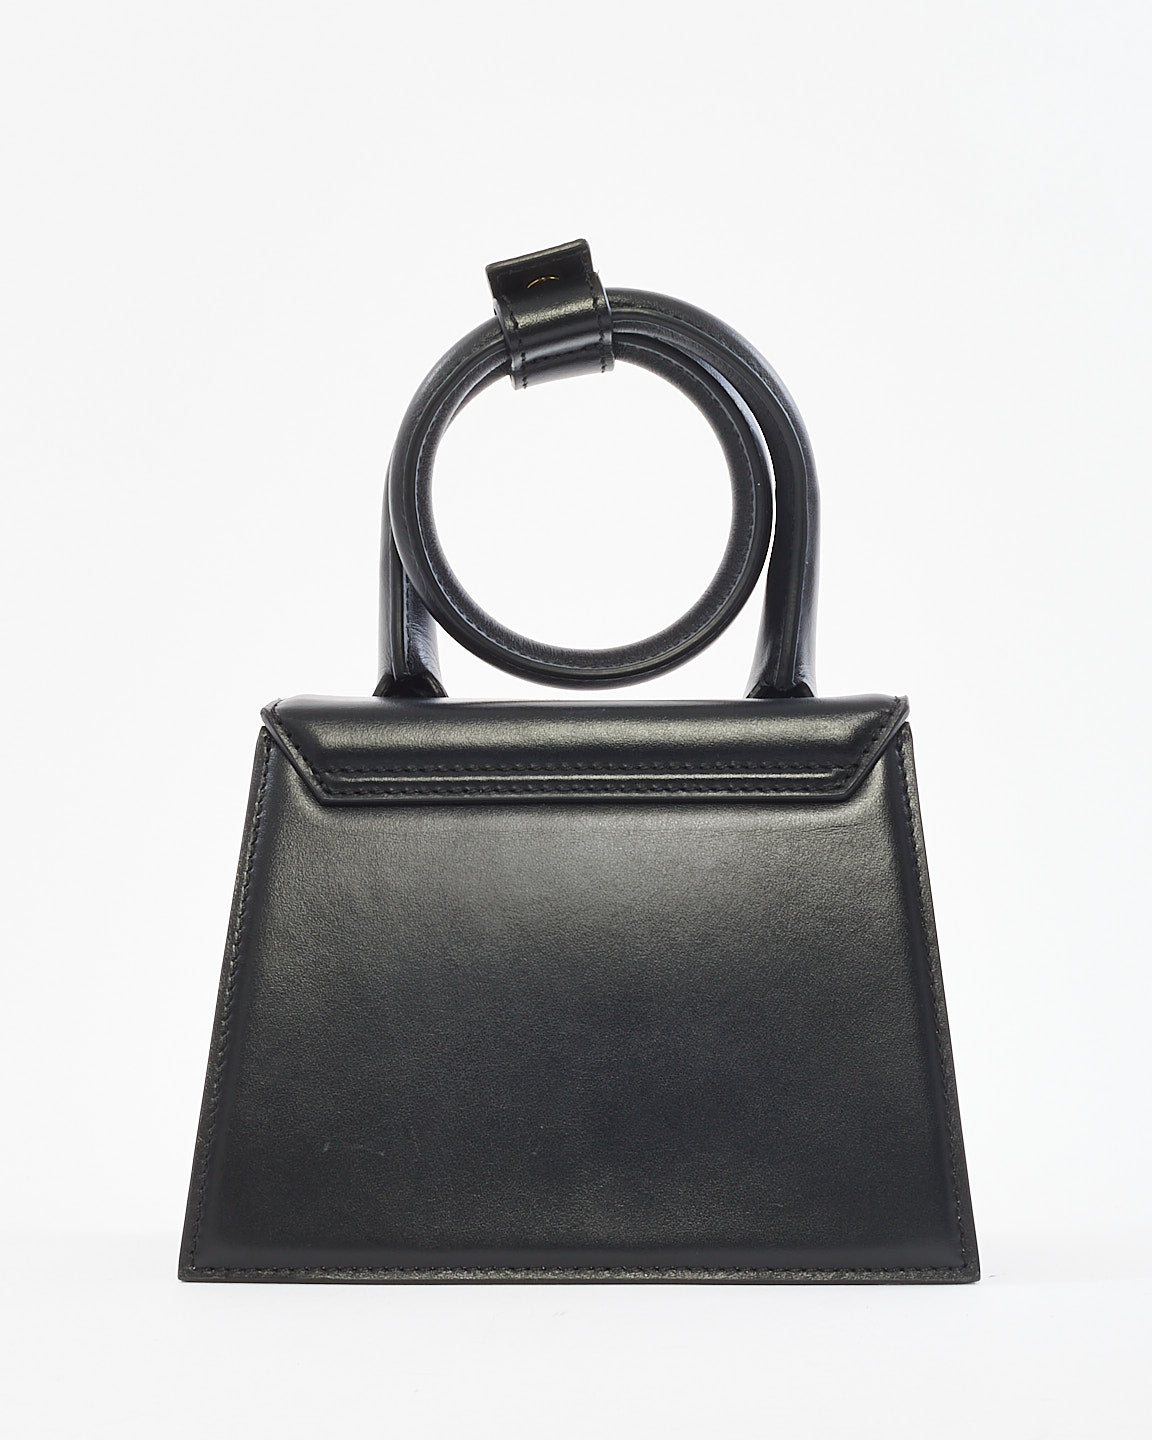 Jacquemus Black Leather Les Classiques "Le Chiquito Noeud" Bag